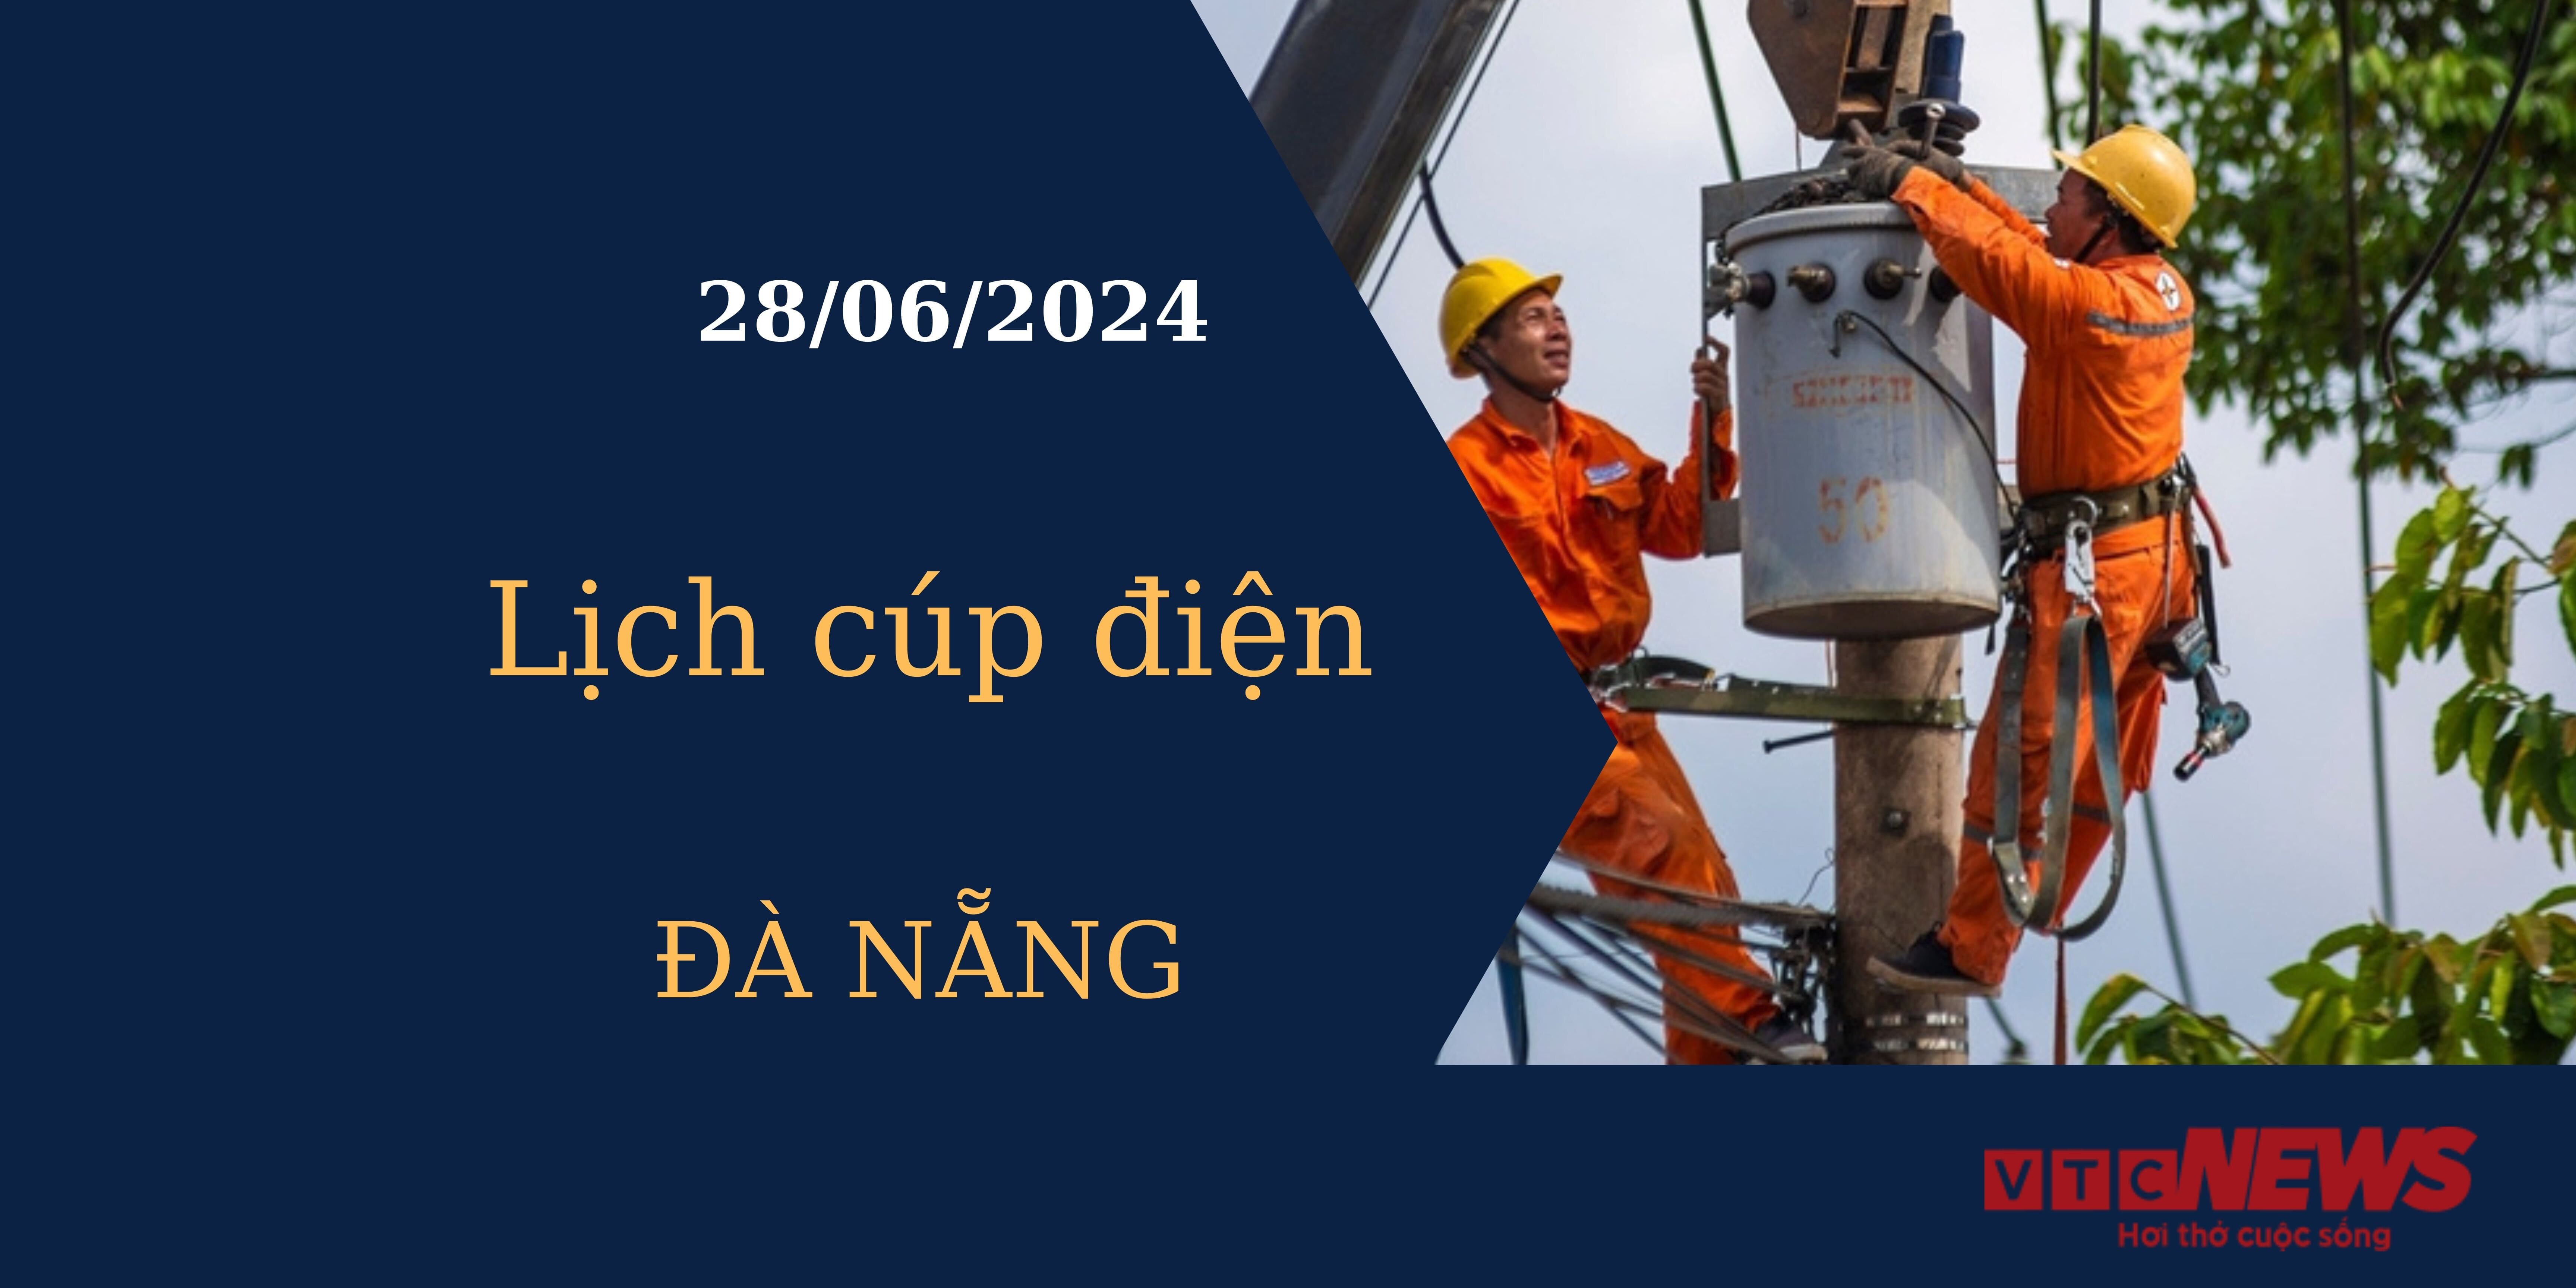 Lịch cúp điện hôm nay tại Đà Nẵng ngày 28/06/2024